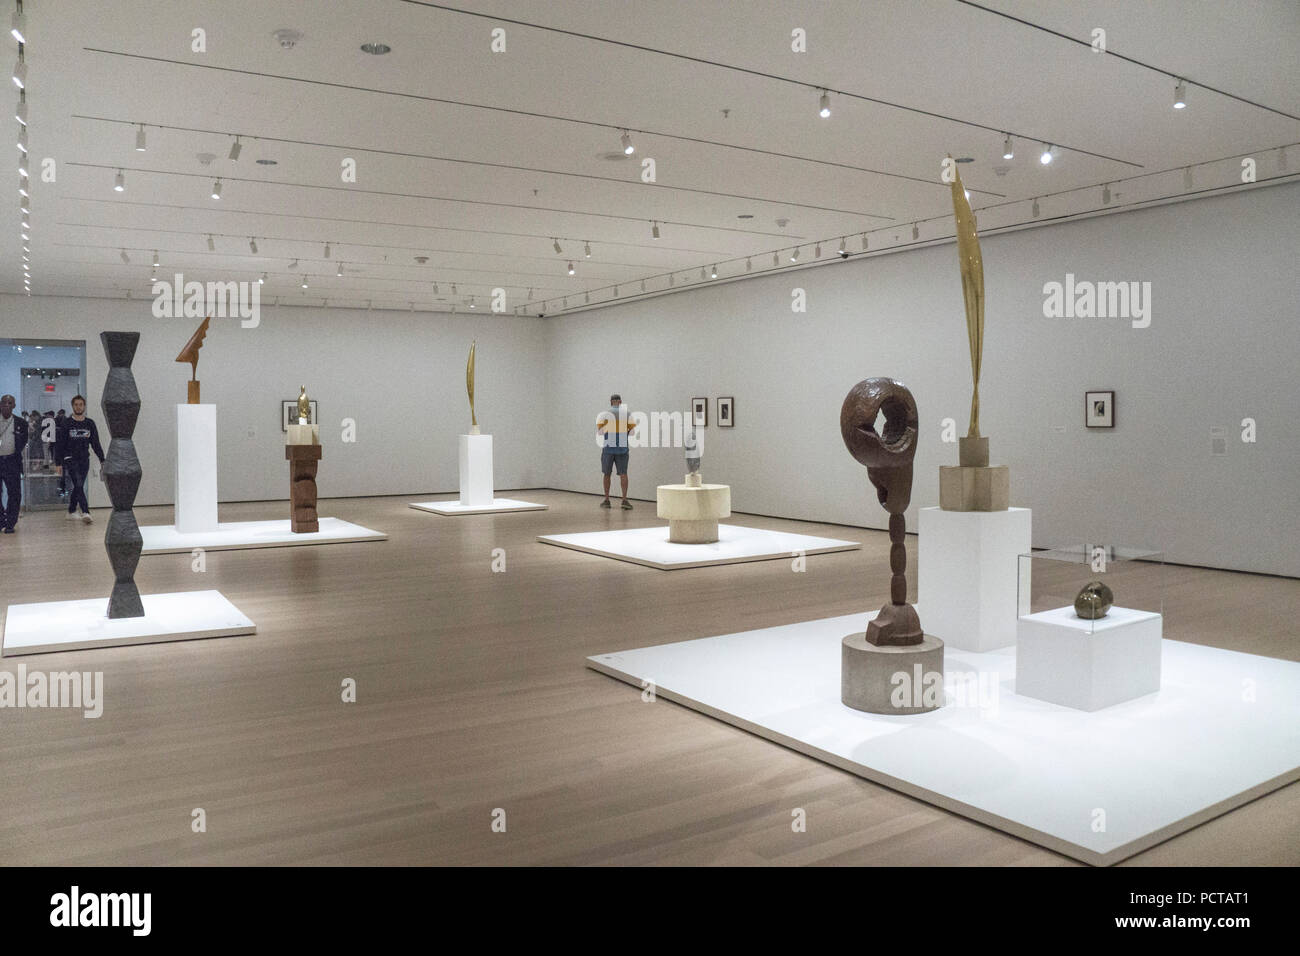 L'installation de petite exposition Constantin Brancusi sculpture Museum d'Art Moderne de New York a organisé à partir de la MoMA Brancusi holdings 18 févr. 2019 fermer Banque D'Images